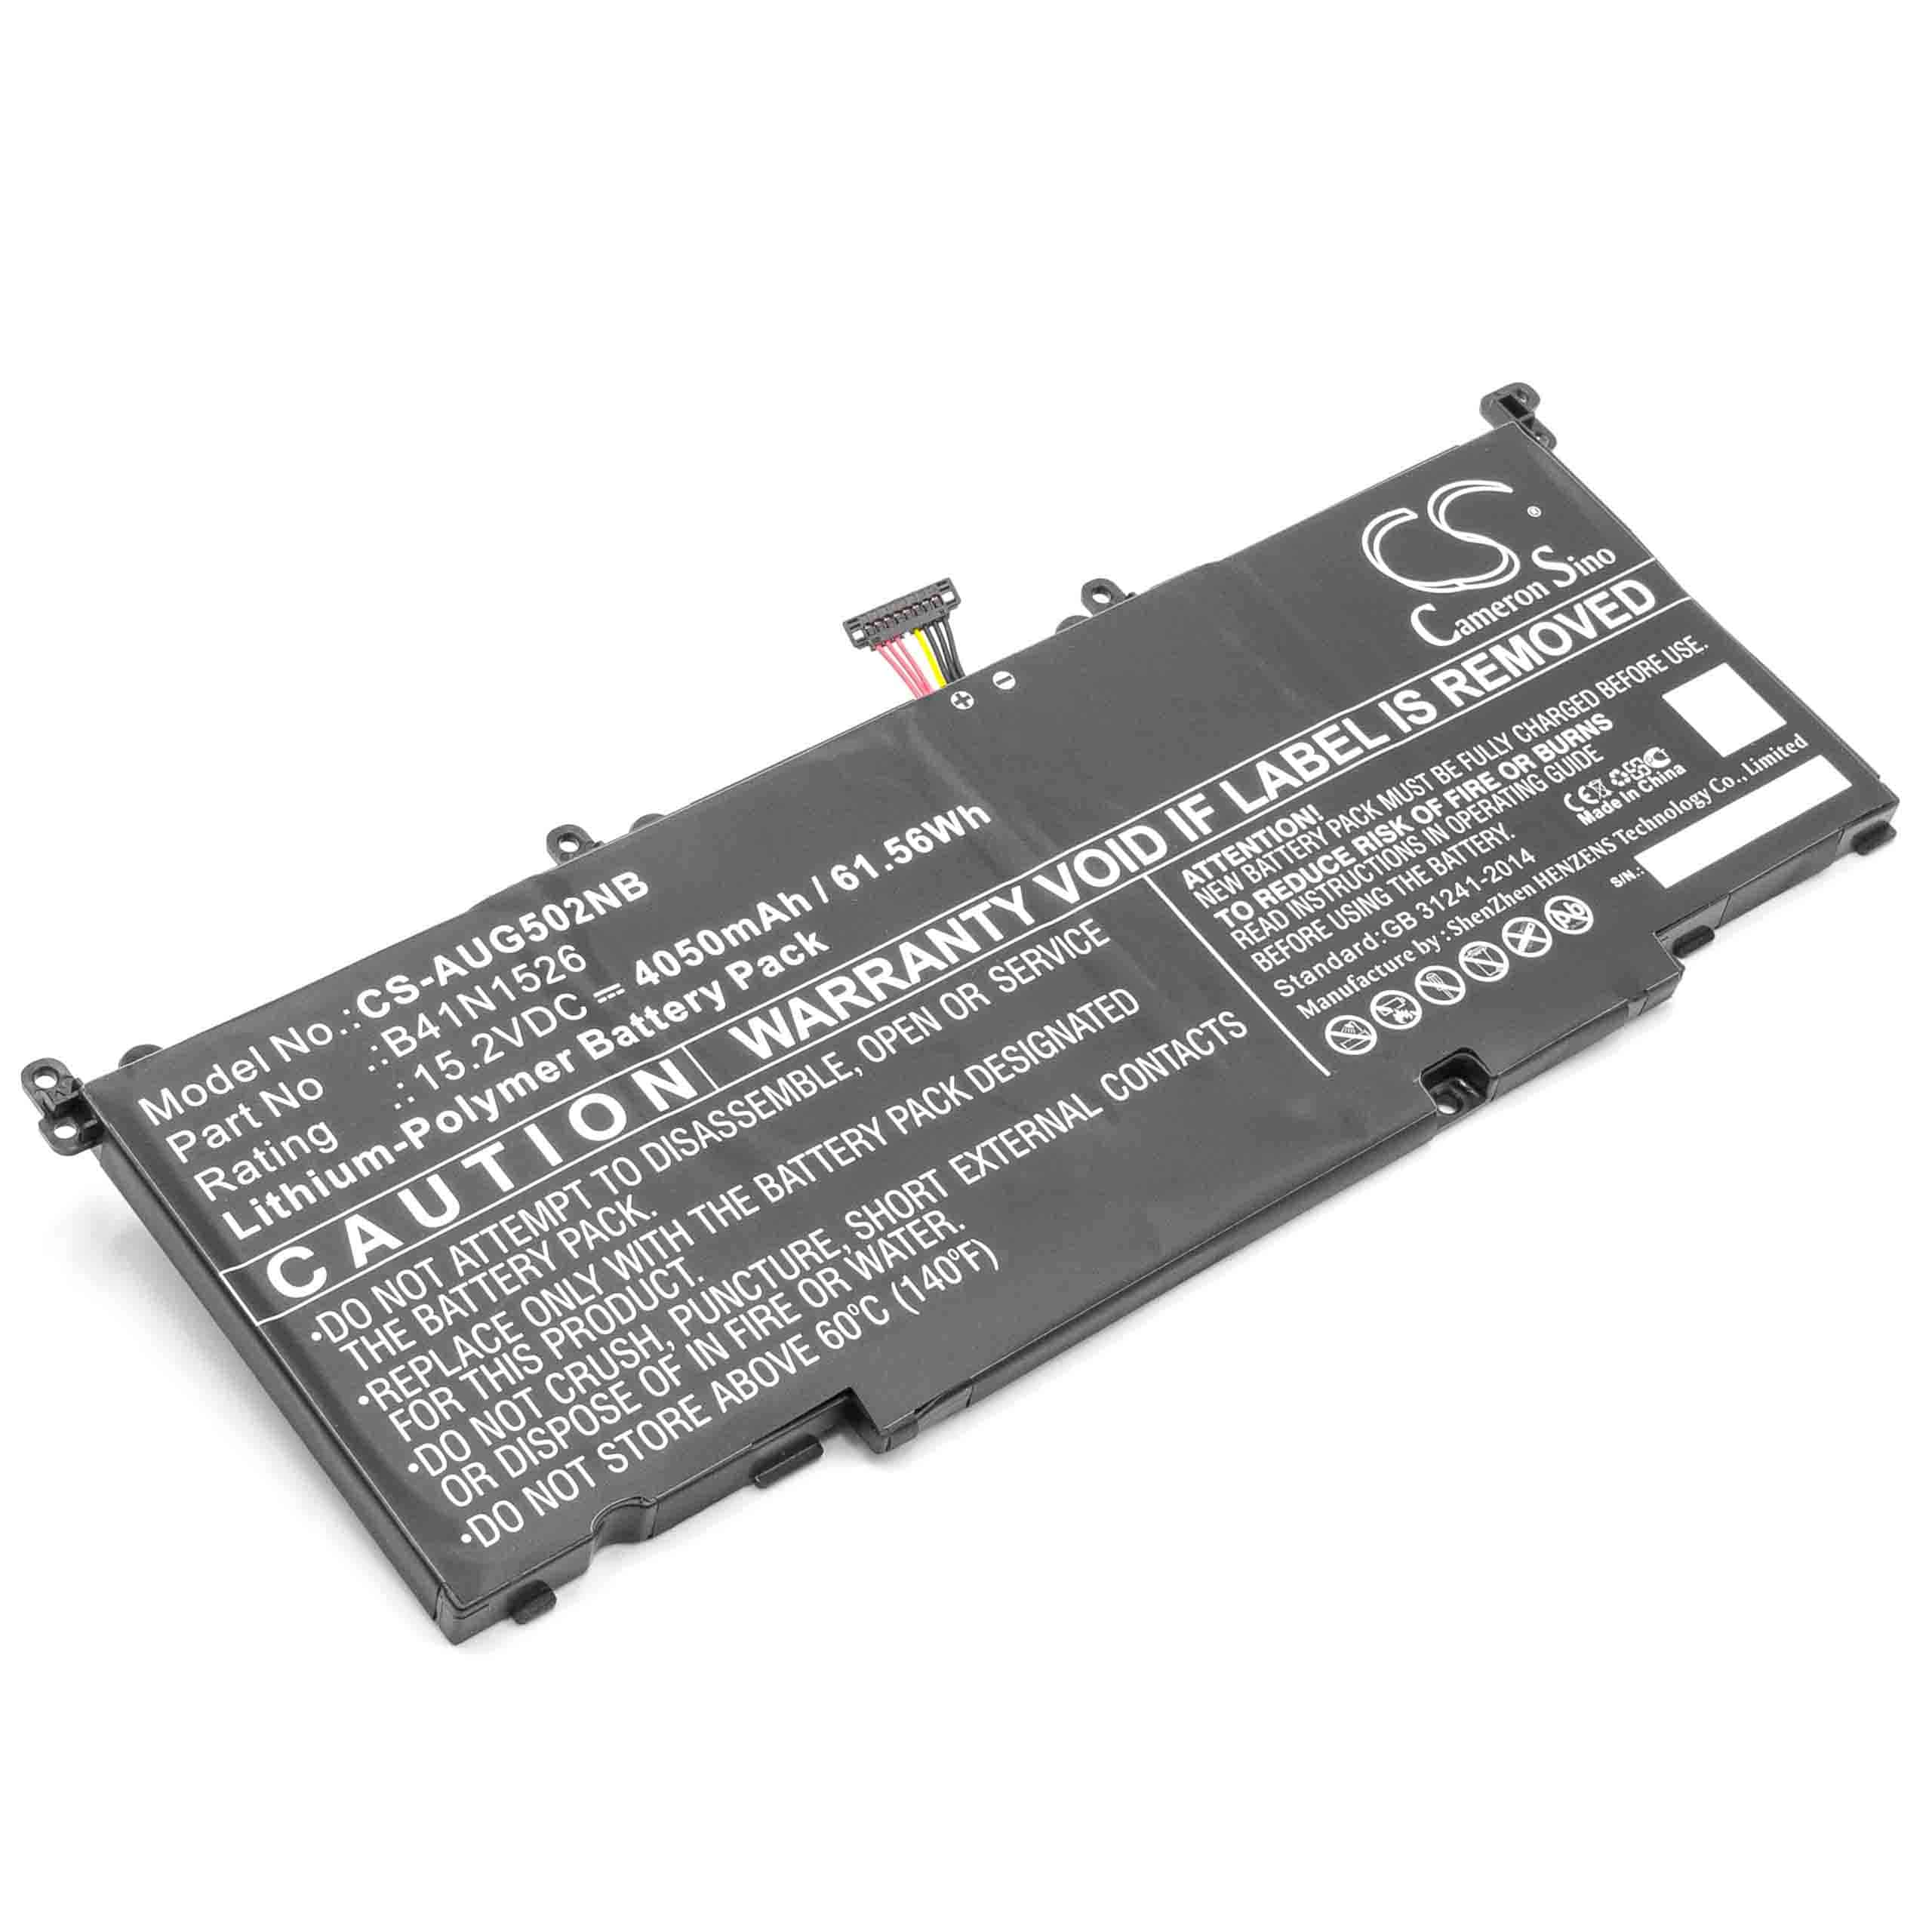 Batteria sostituisce Asus B41N1526, 0B200-0194000 per notebook Asus - 4050mAh 15,2V Li-Poly nero